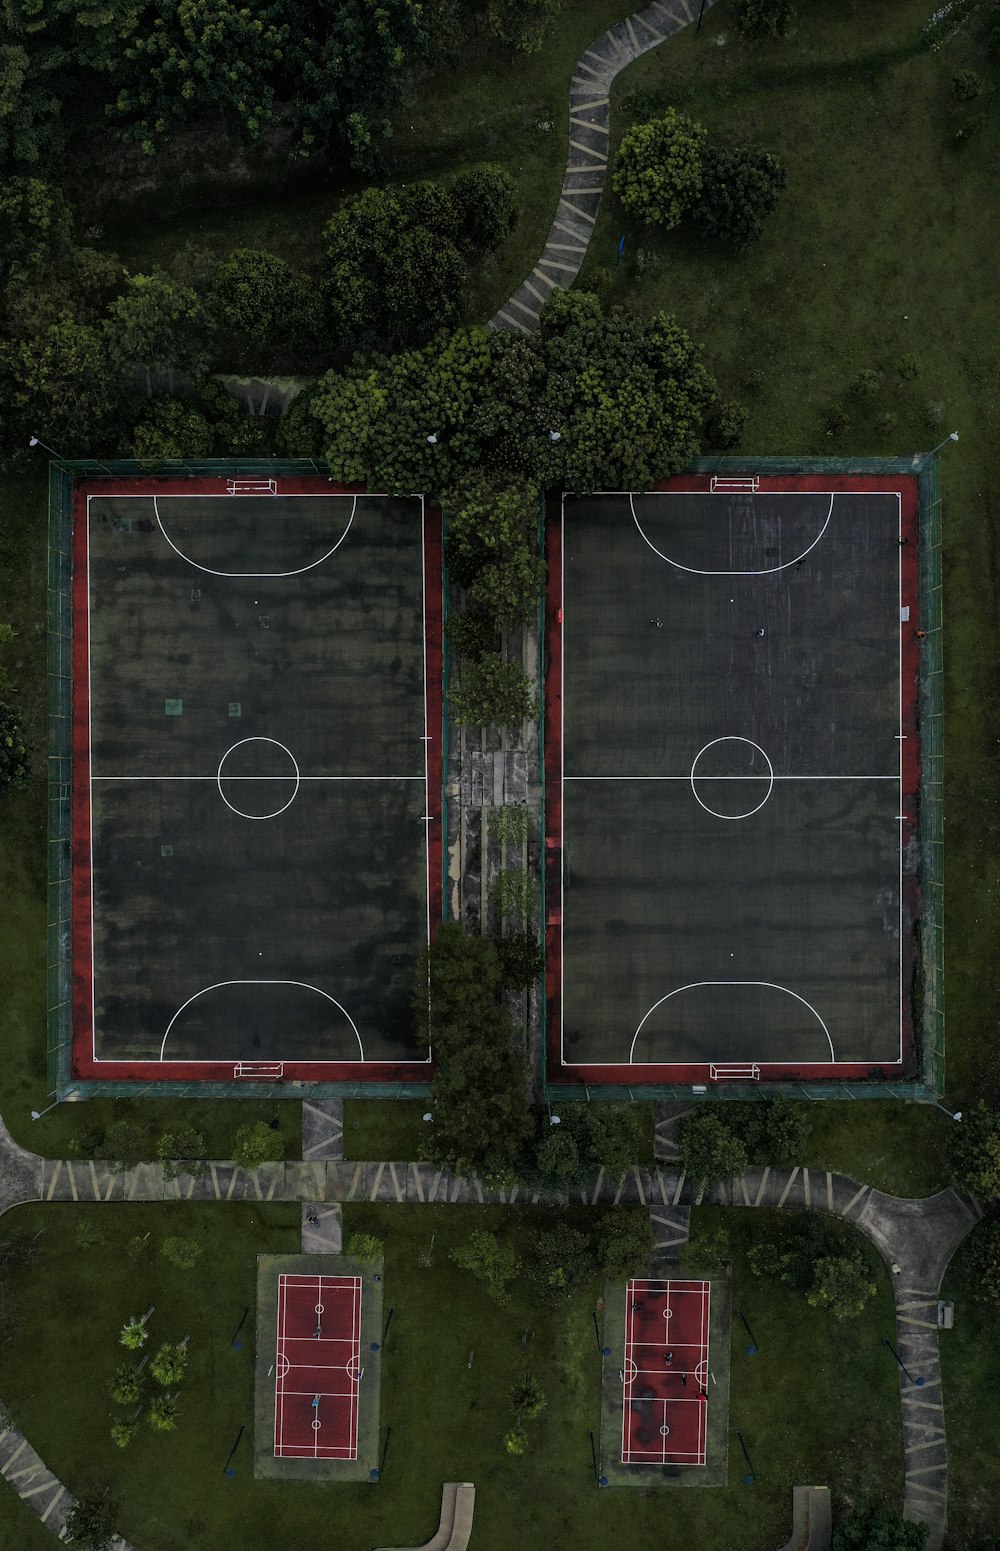 Photographie aérienne de terrains de basket-ball